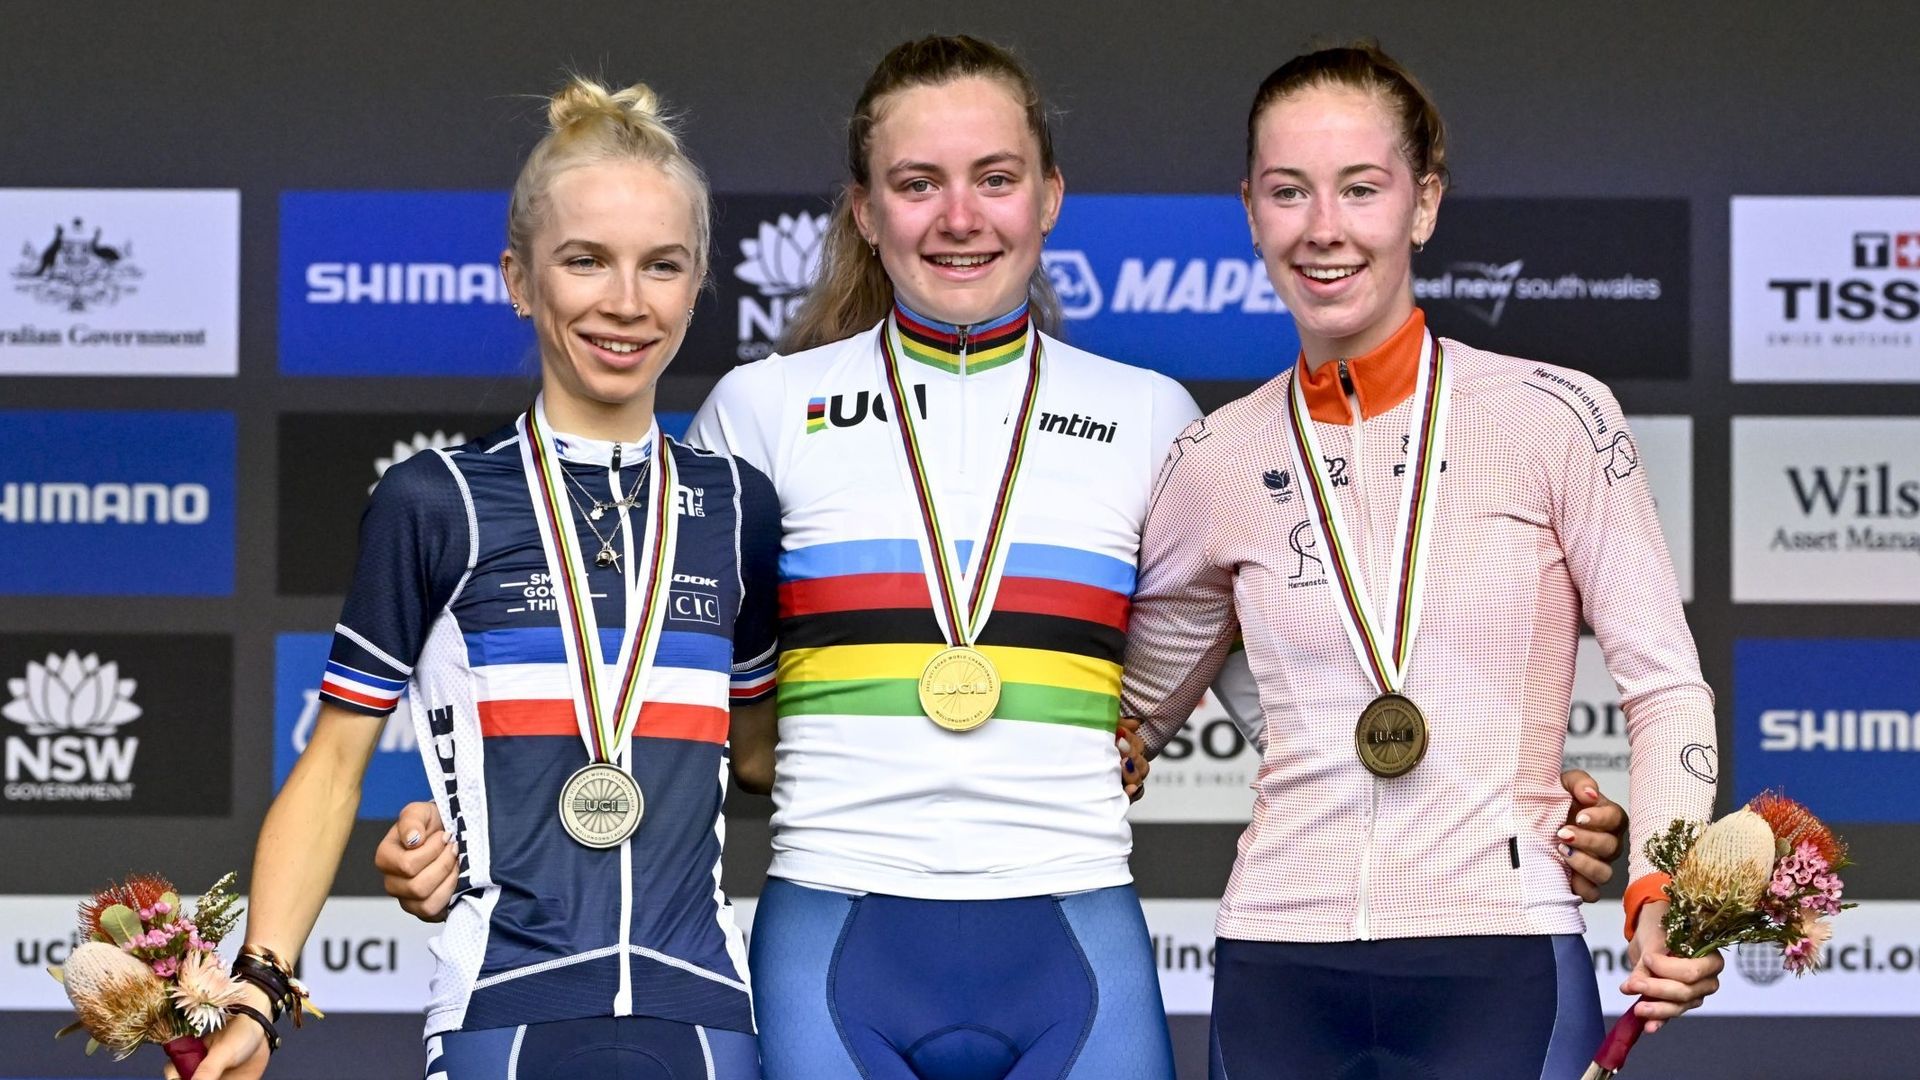 Mondiaux de cyclisme : le podium de la course en ligne des juniors aux championnats du monde à Wollongong, en Australie. De gauche à droite, Eglantine Rayer (2ème, en argent), Zoe Bäckstedt (1ère, en or) et Nienke Vinke (3ème, en bronze).